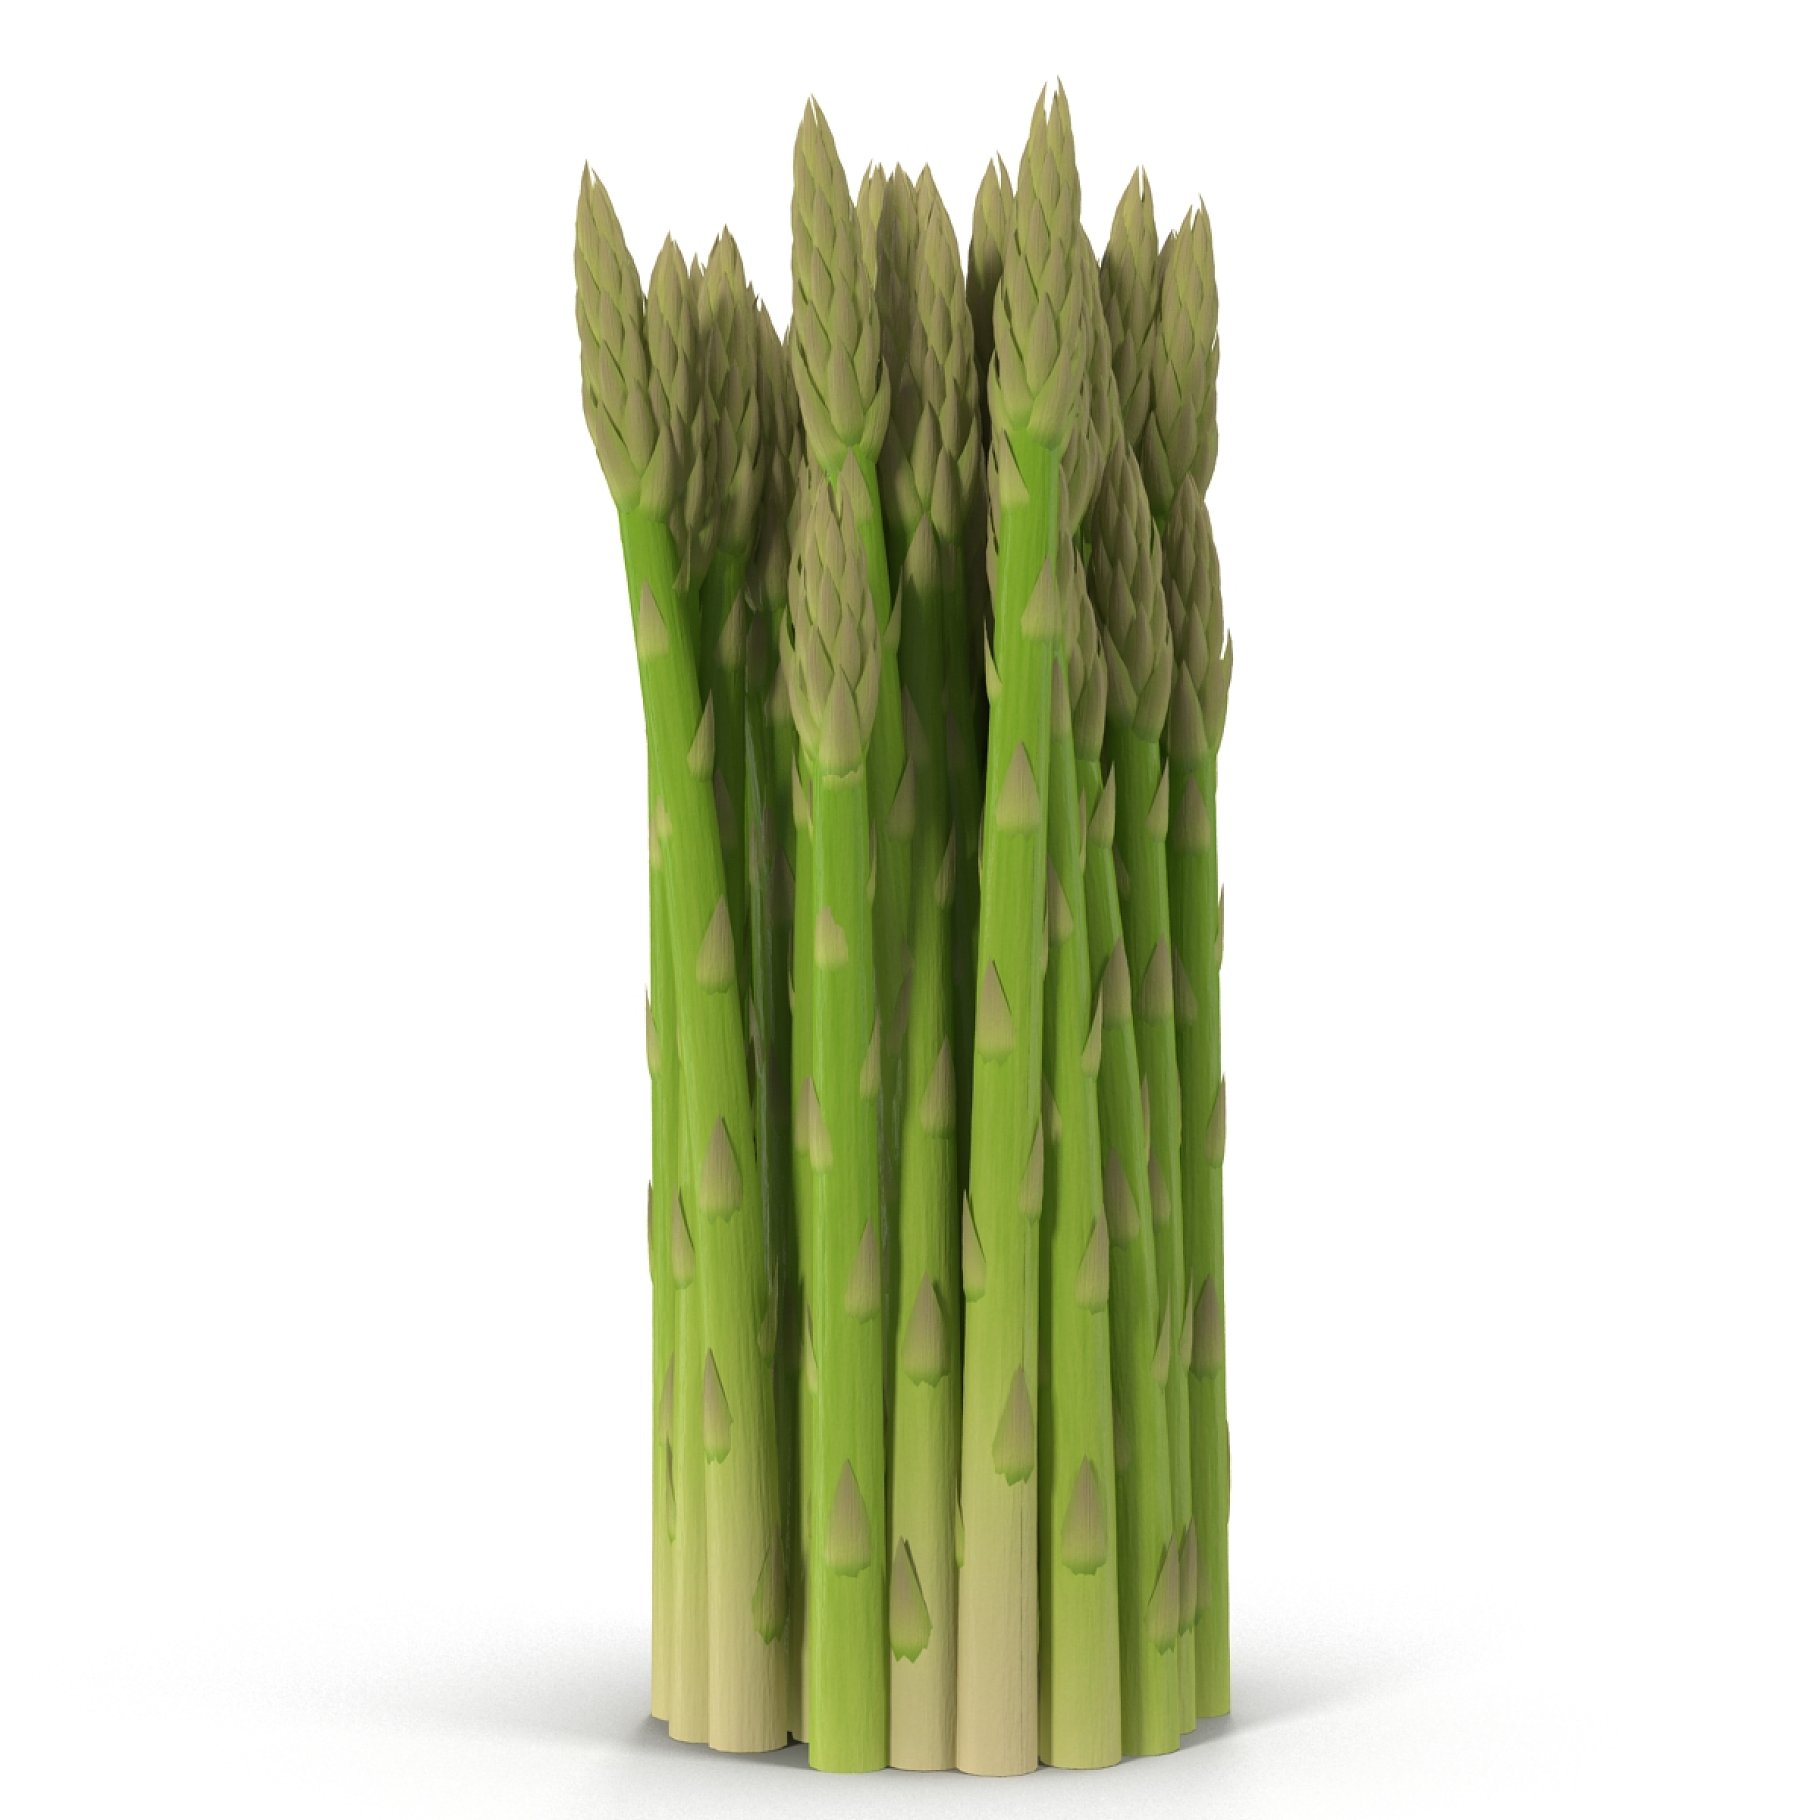 A bunch of asparagus.